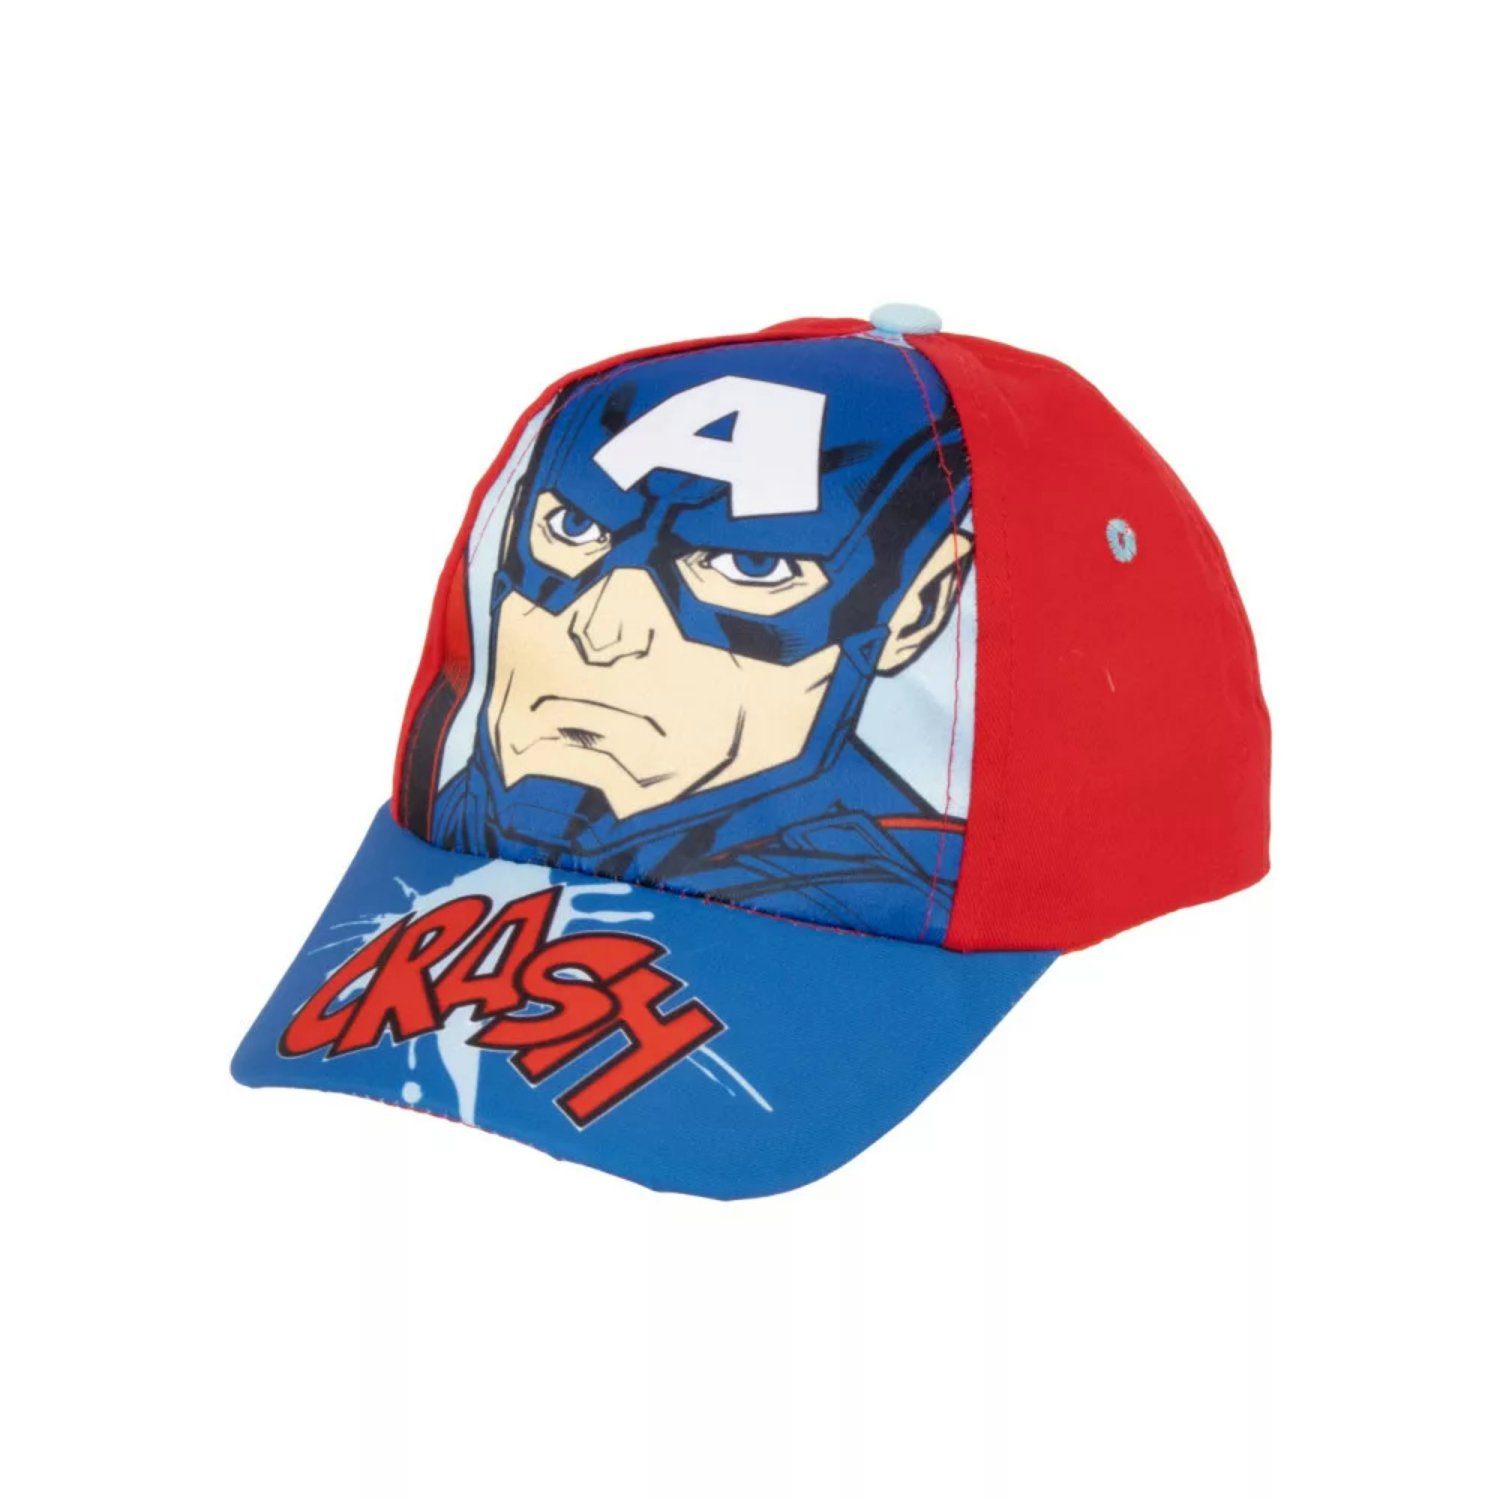 MARVEL Baseball Cap Avengers Captain America Iron-Man Jungen Baseball Kappe Gr. 52/54 Rot